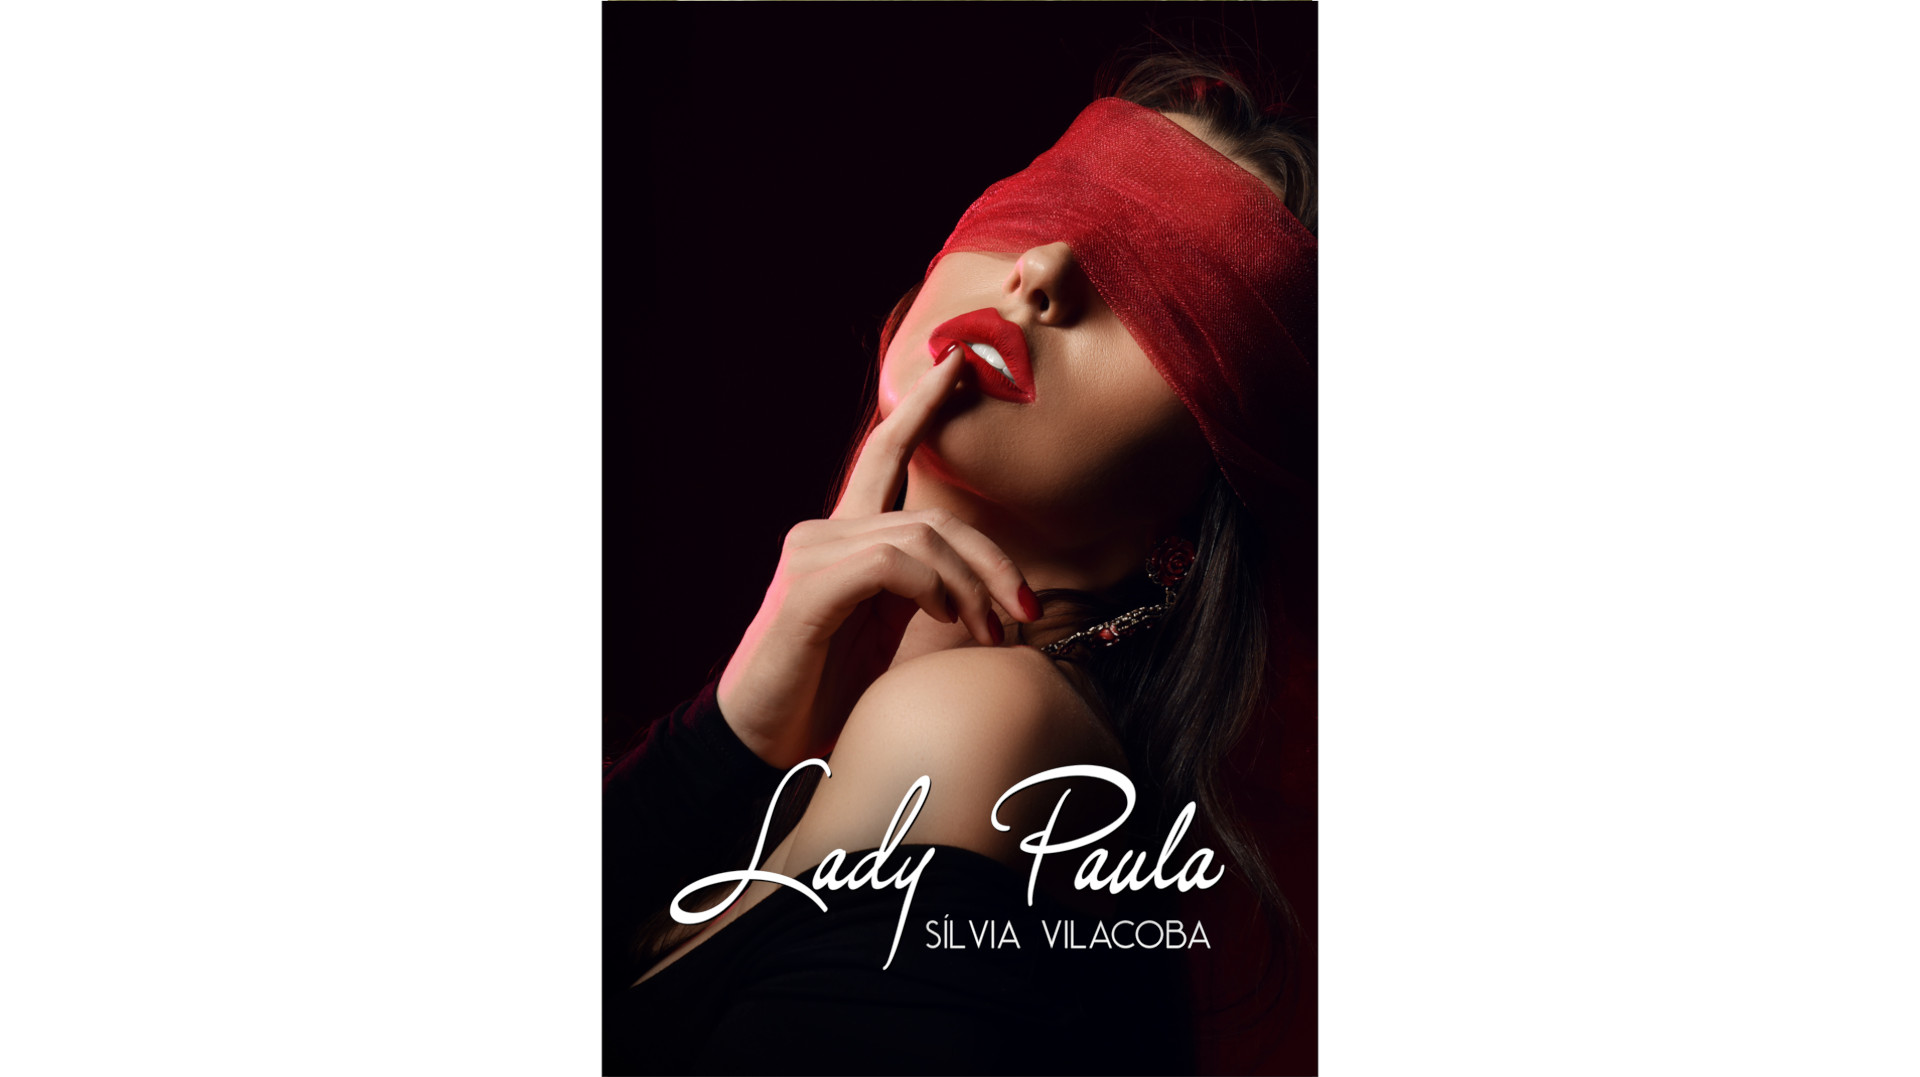 Presentació de la novel·la eròtica ‘Lady Paula’, de Sílvia Vilacoba